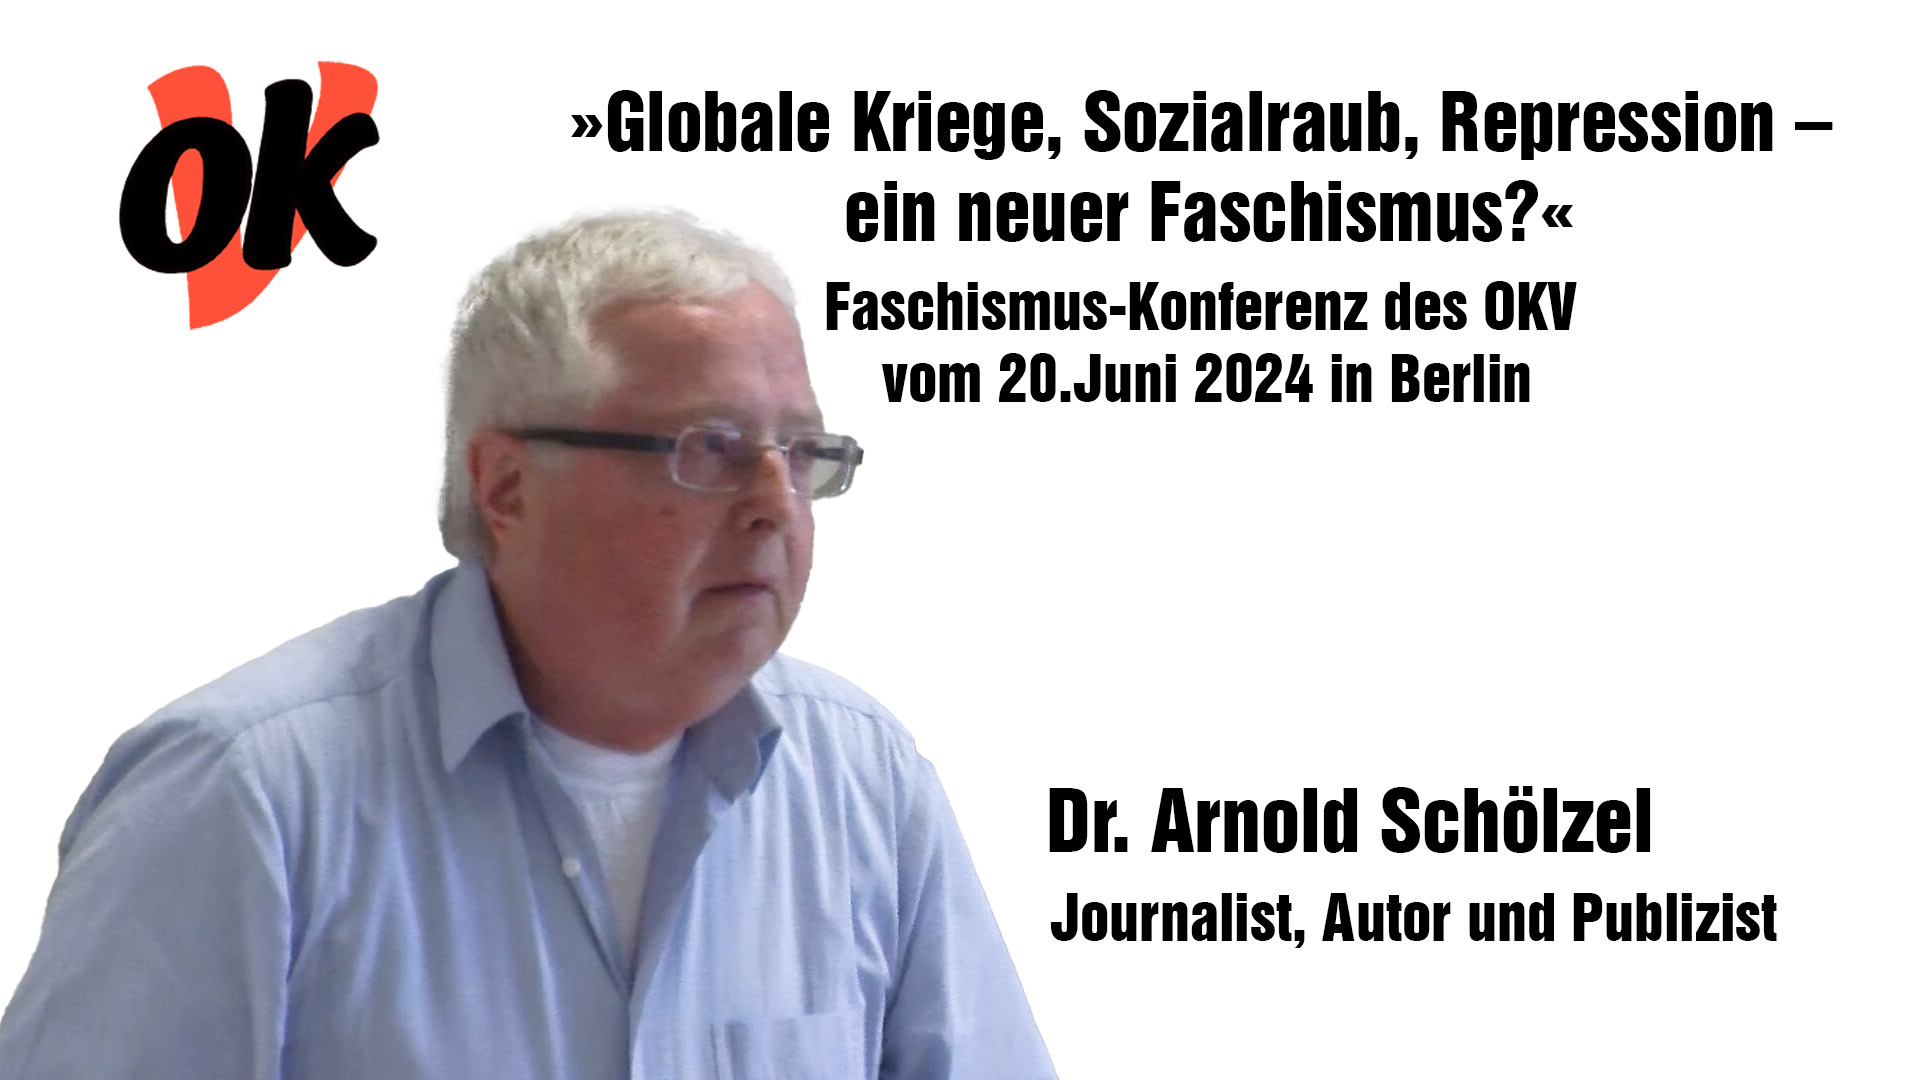 Arnold Schölzel